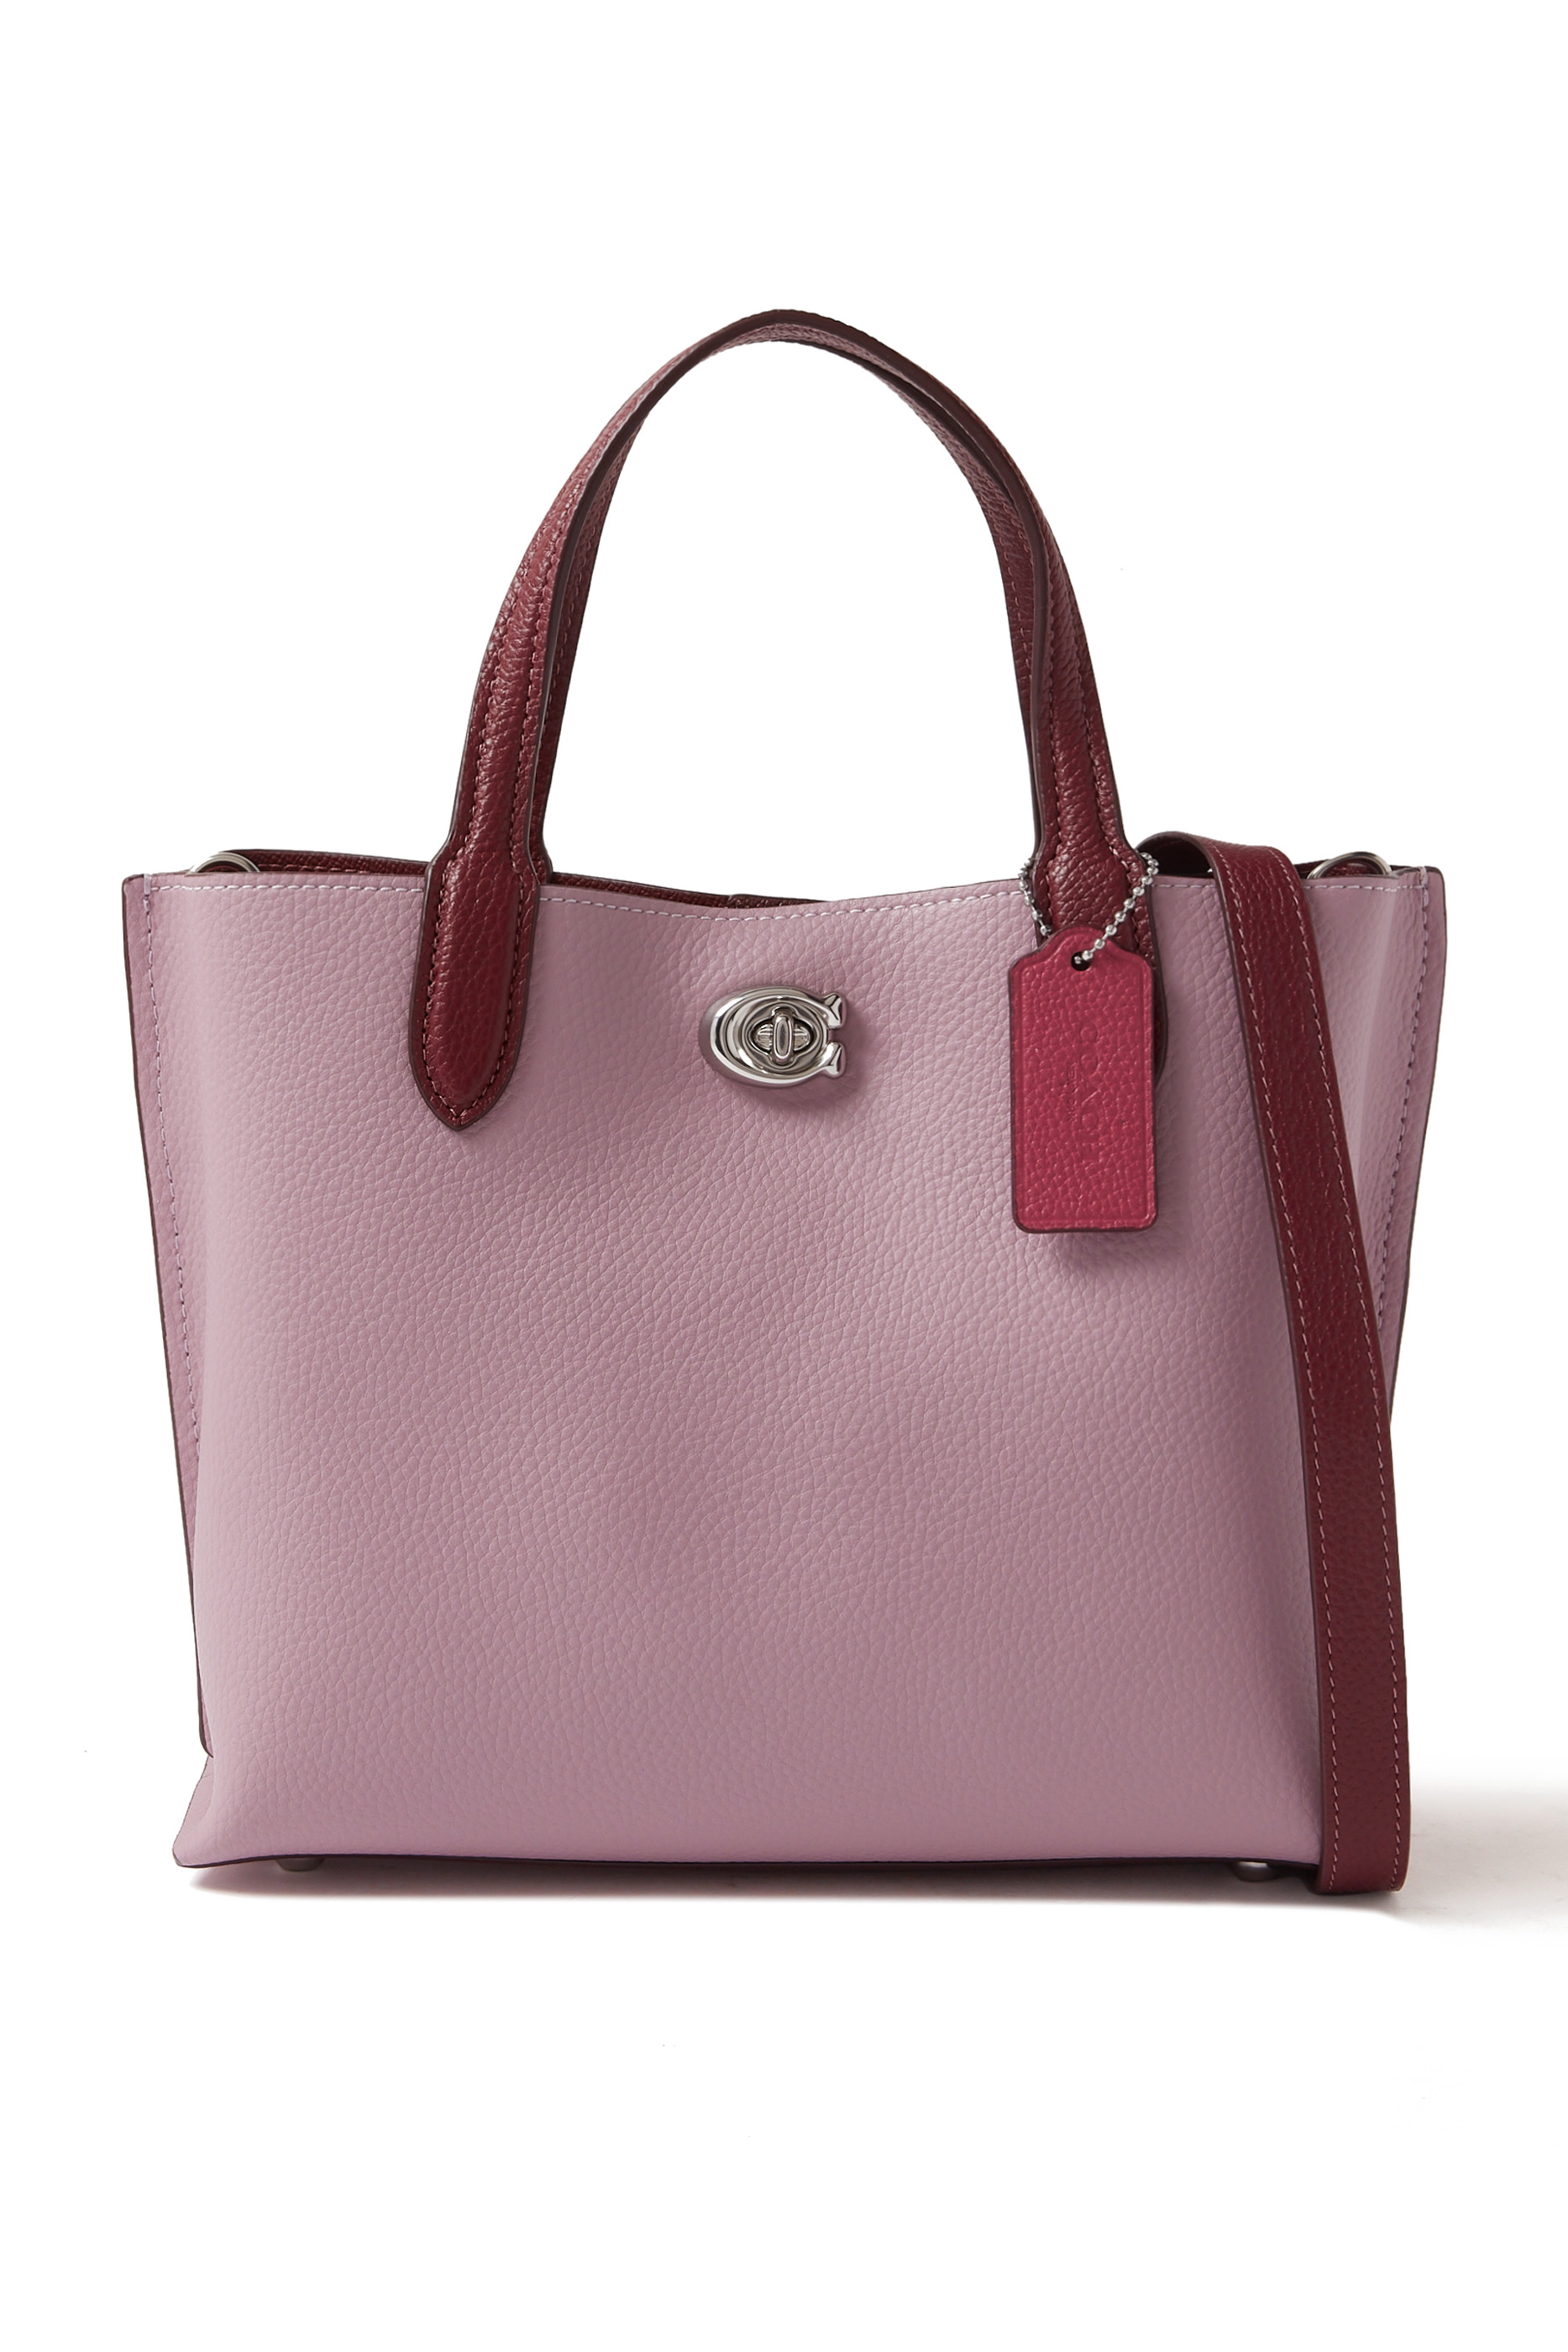 Pink Coach Bags - Bloomingdale's